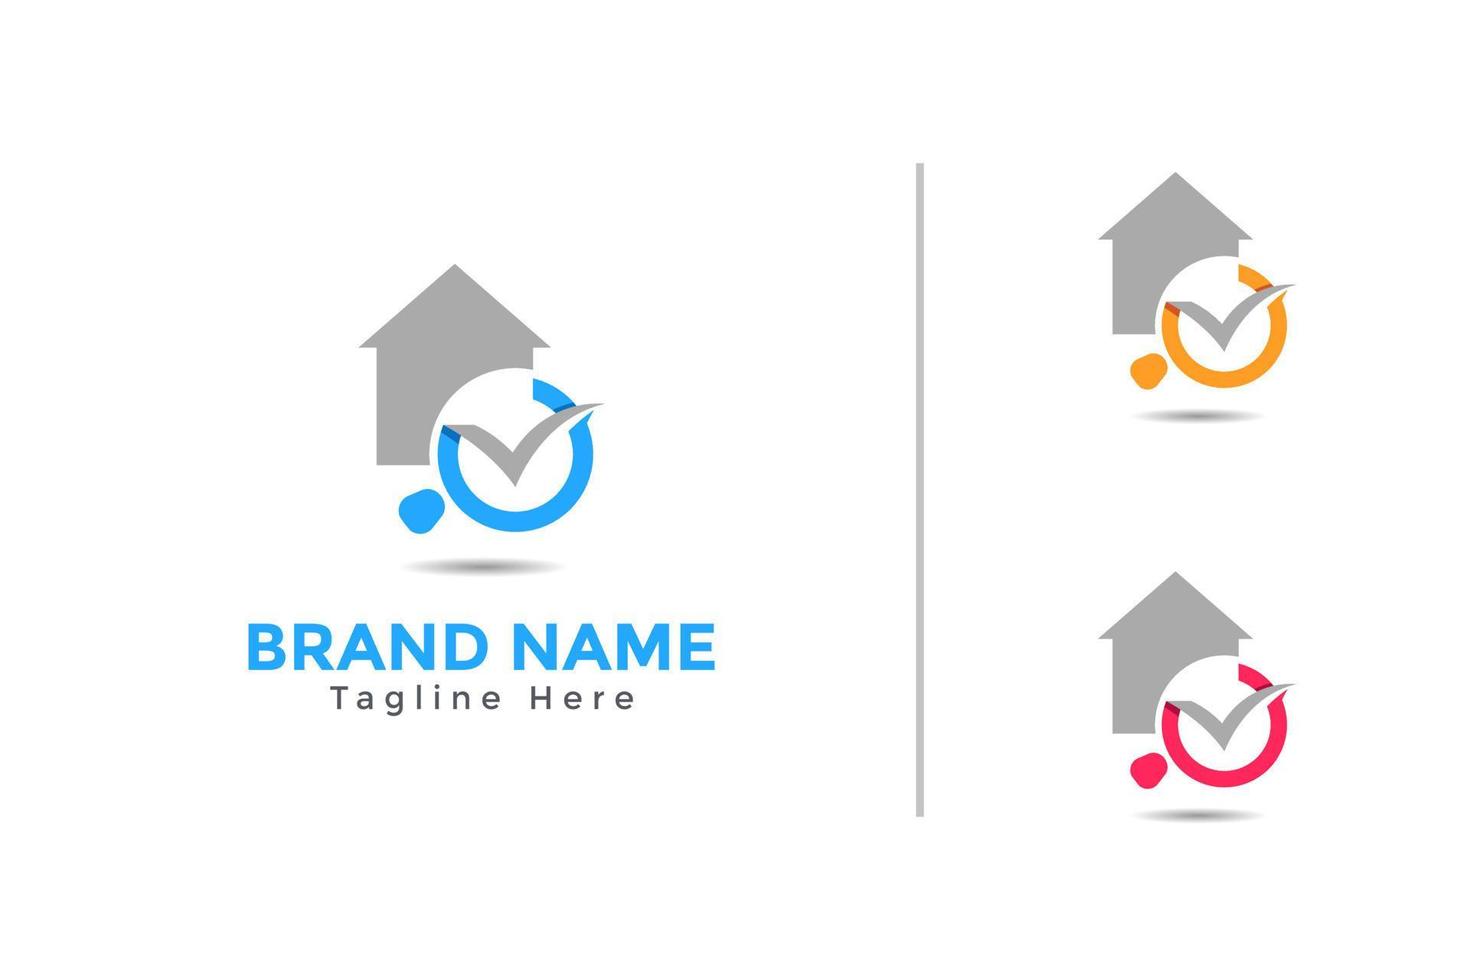 Home search inspection logo design vector. Real estate logo template vector